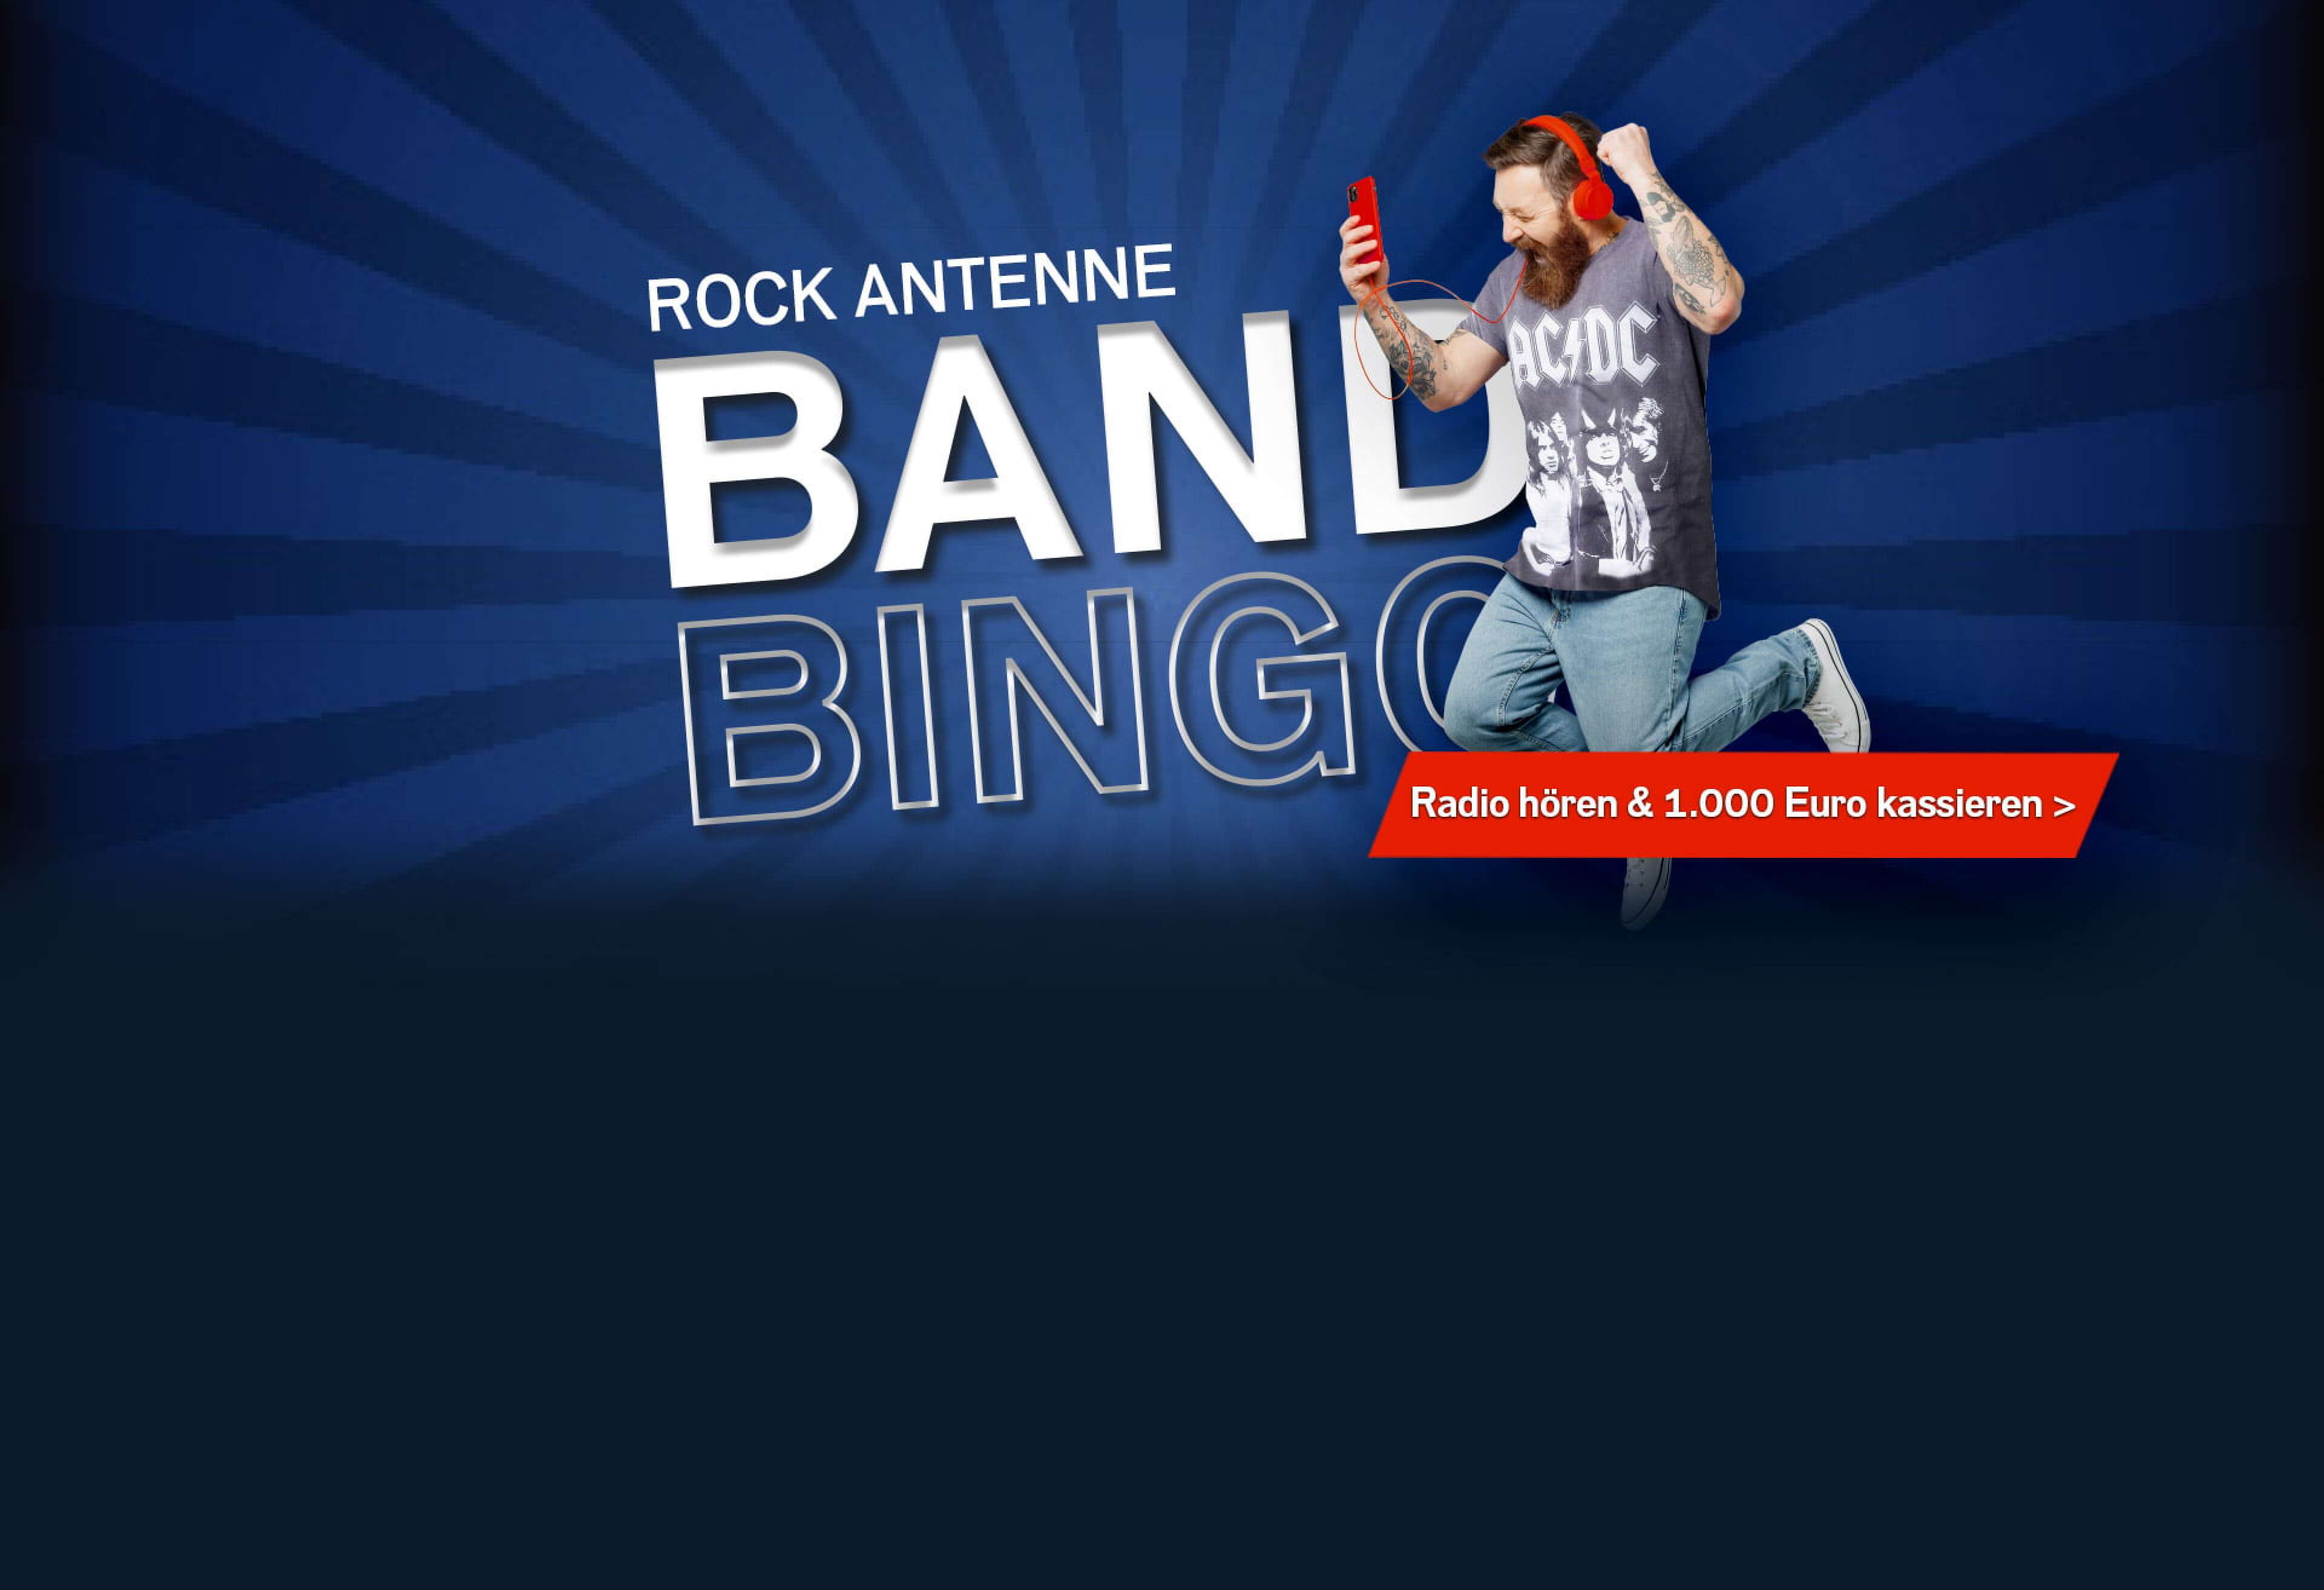 Ein jubelnder Mann mit AC/DC Shirt, Kopfhörern und Smartphone und dazu der Text "ROCK ANTENNE Band Bingo - Radio hören und 1.000 Euro kassieren"